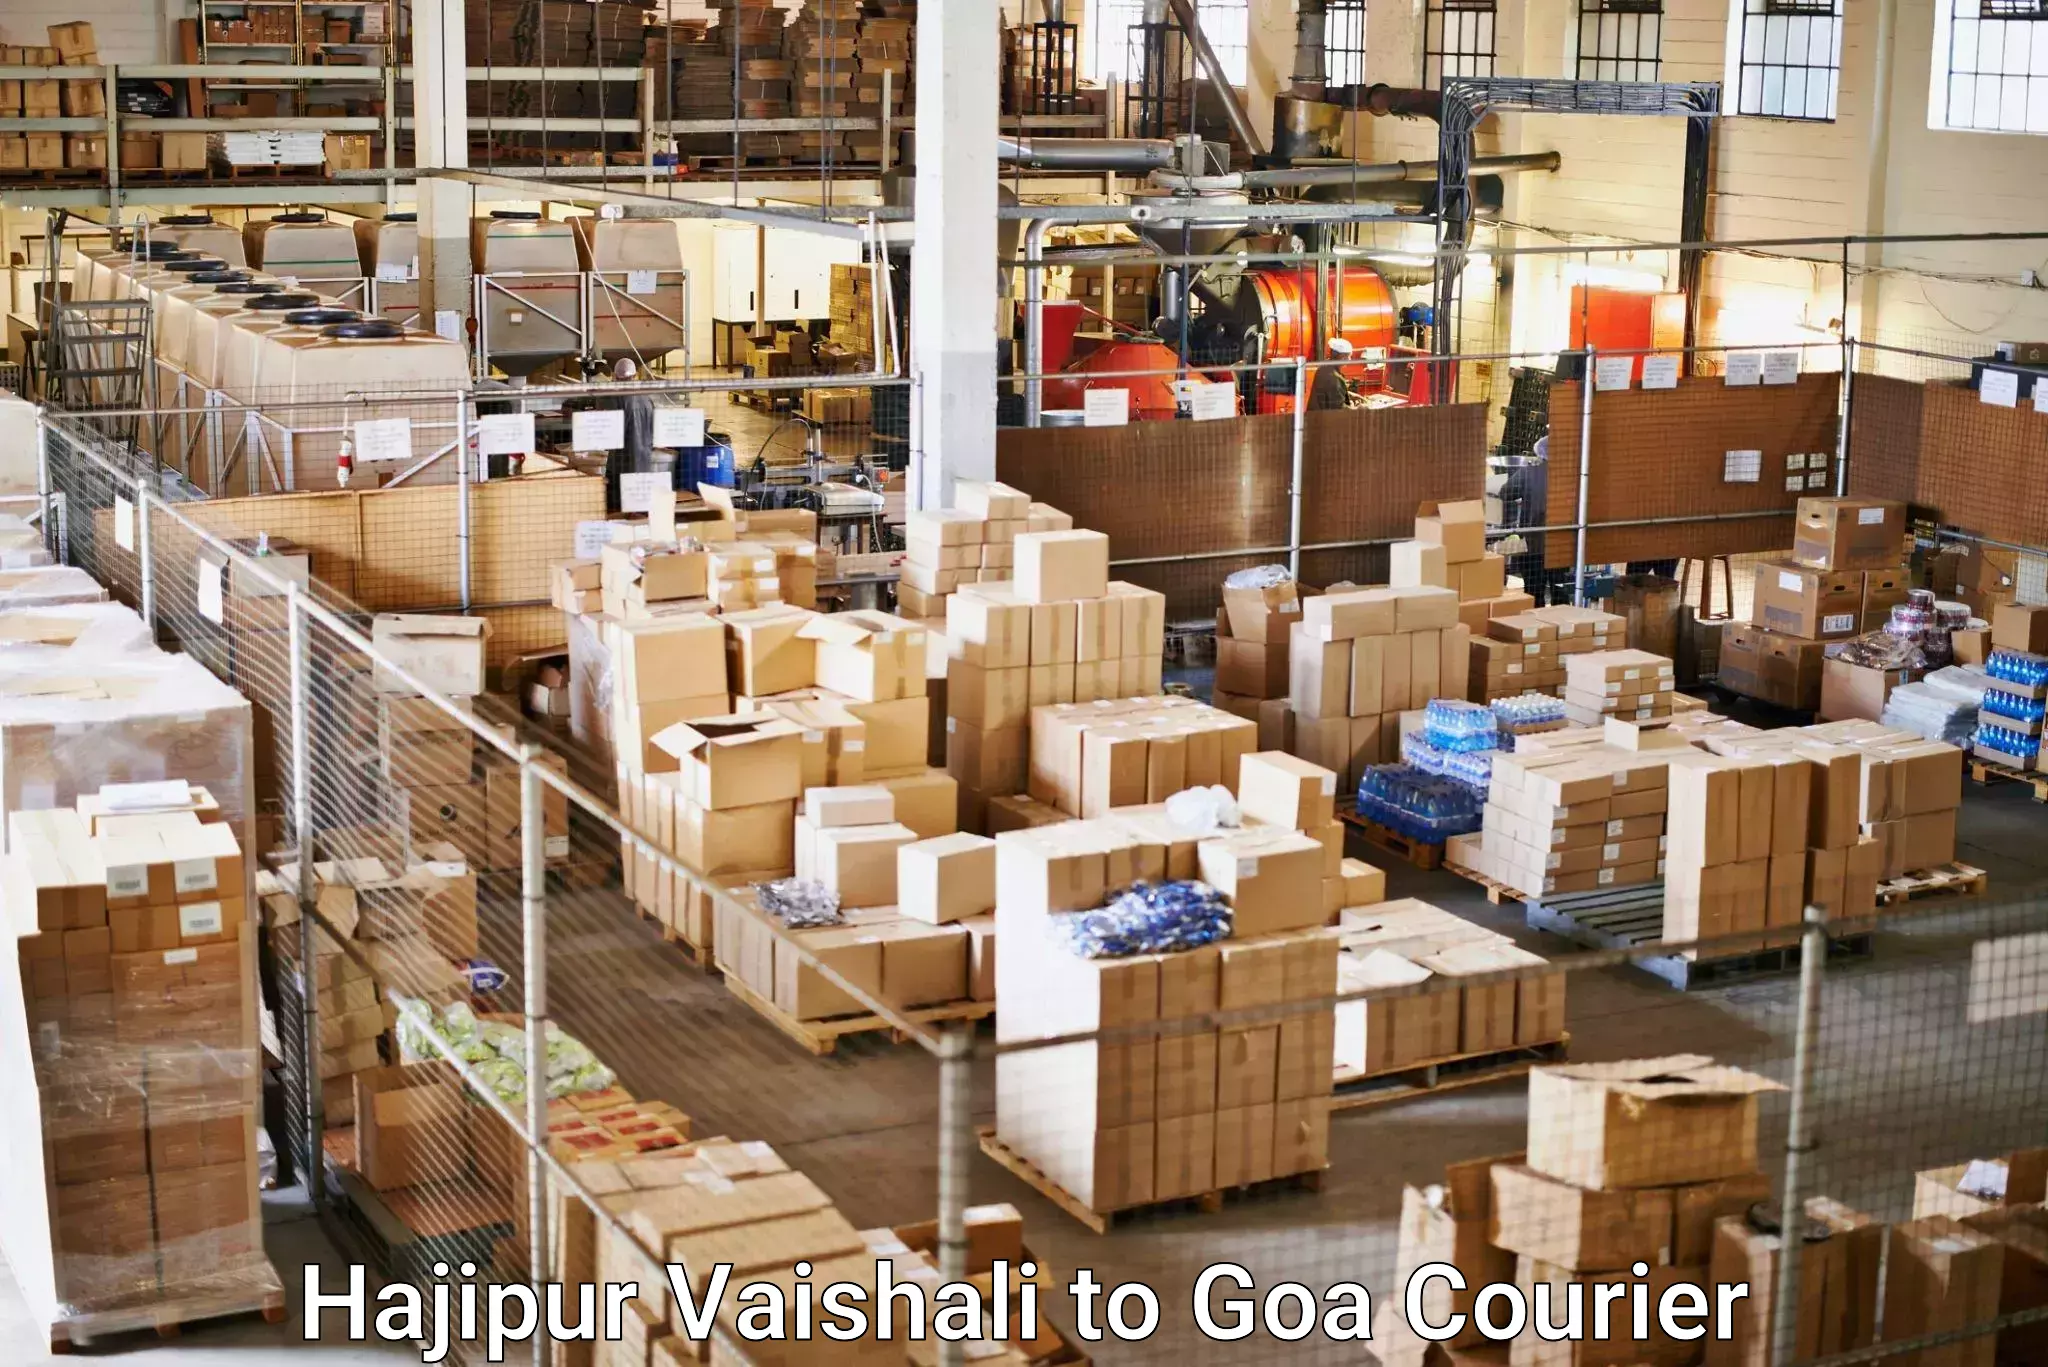 Seamless shipping experience Hajipur Vaishali to Goa